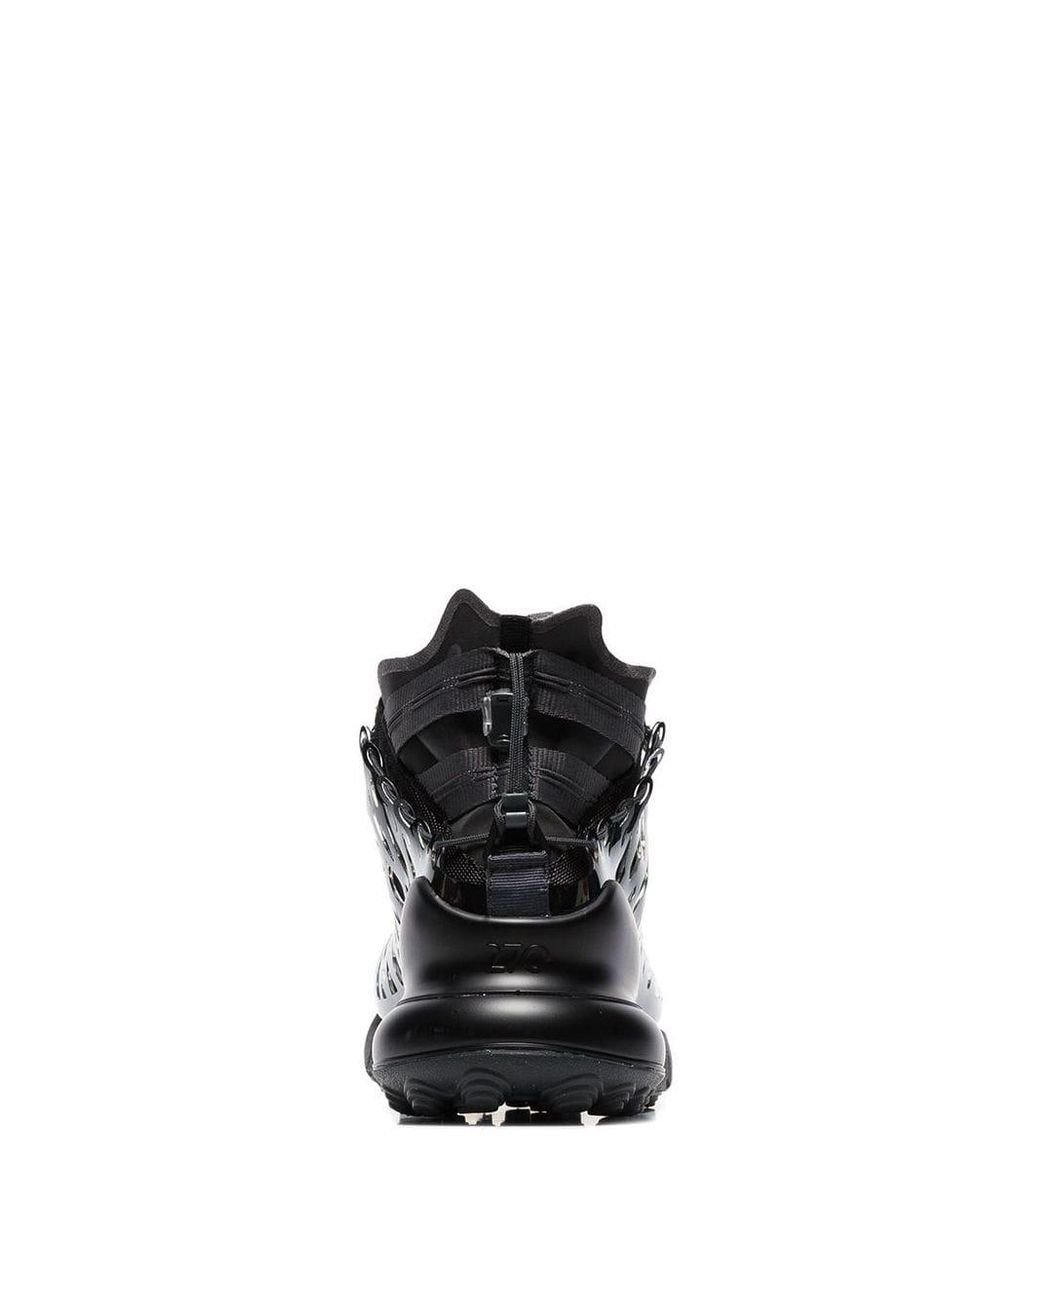 Nike Black Ispa Air Max 270 High Top Sneakers for Men | Lyst